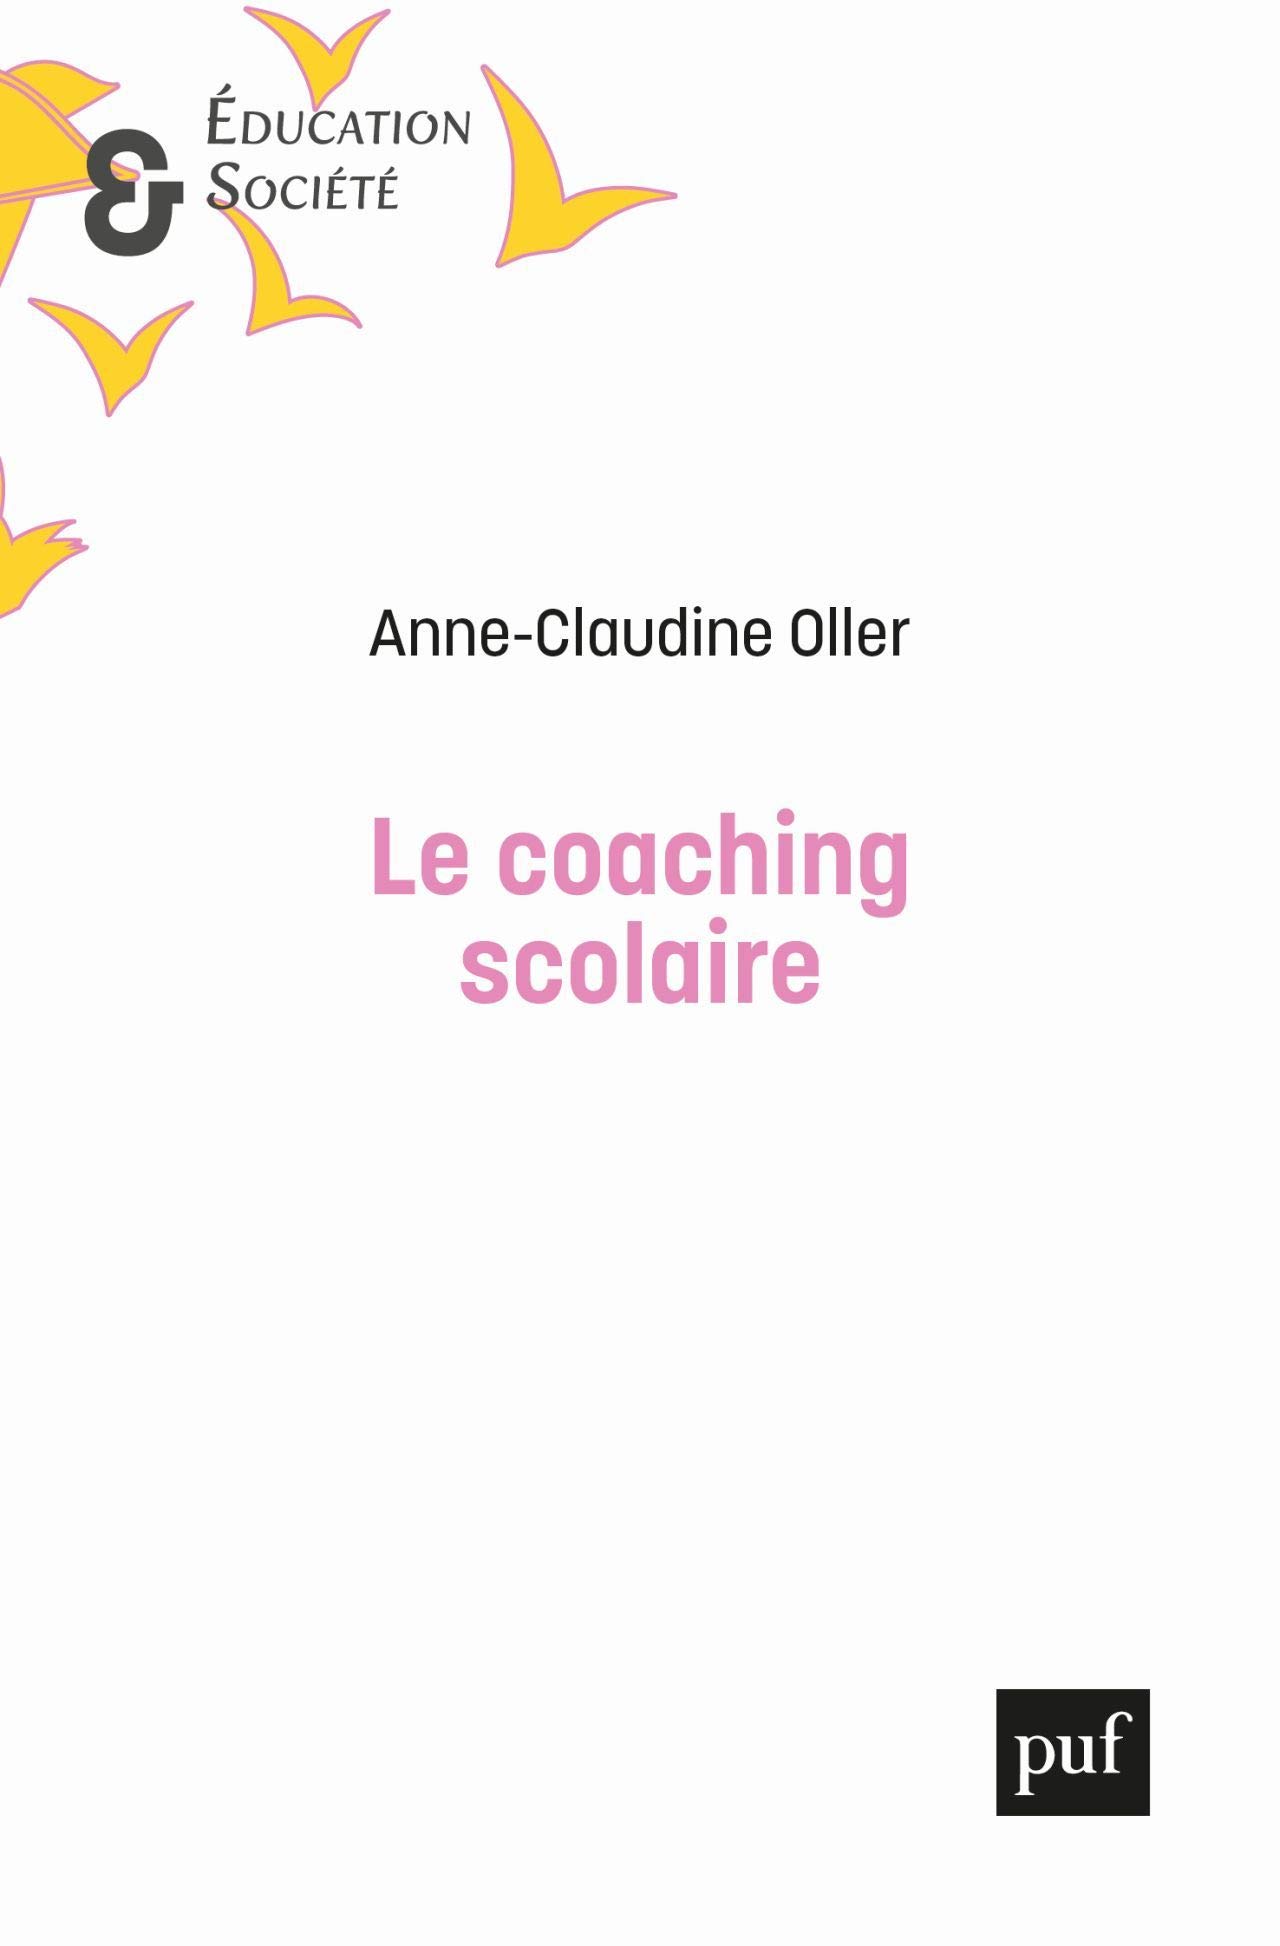 Publication - recension par Gaspard Wiseur de l'ouvrage d'Anne-Claudine Oller "Le coaching scolaire, un marché de la réalisation de soi" (PUF, 2020)